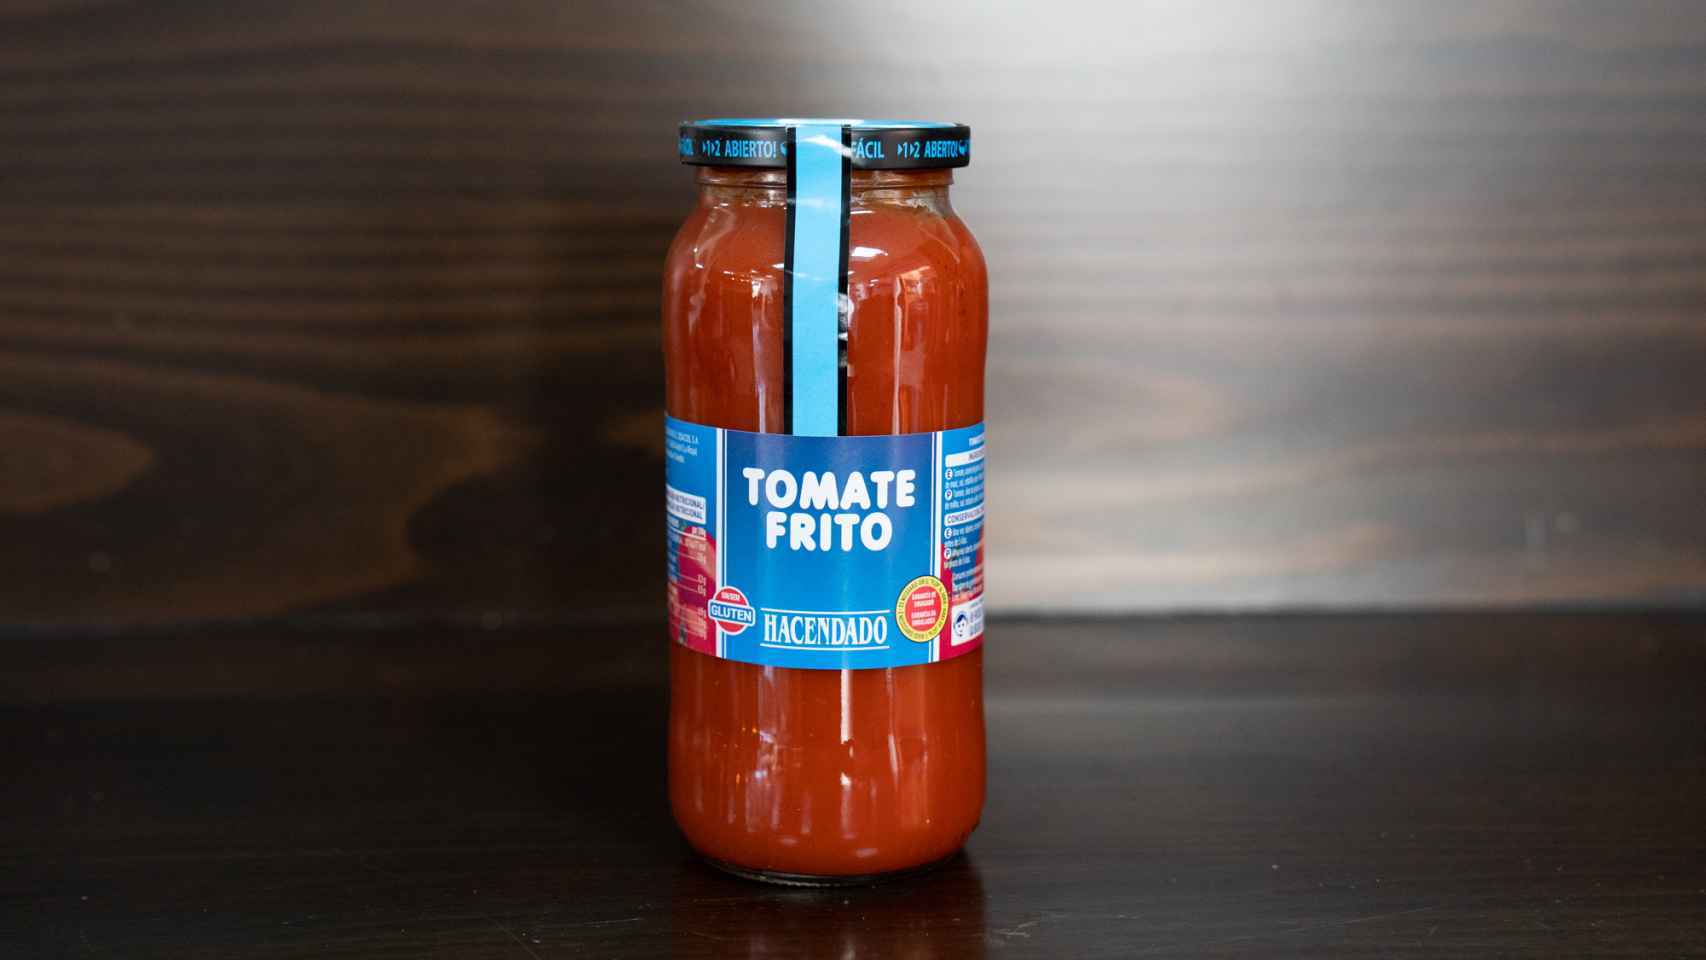 El bote de tomate frito de Hacendado, la marca blanca de Mercadona.